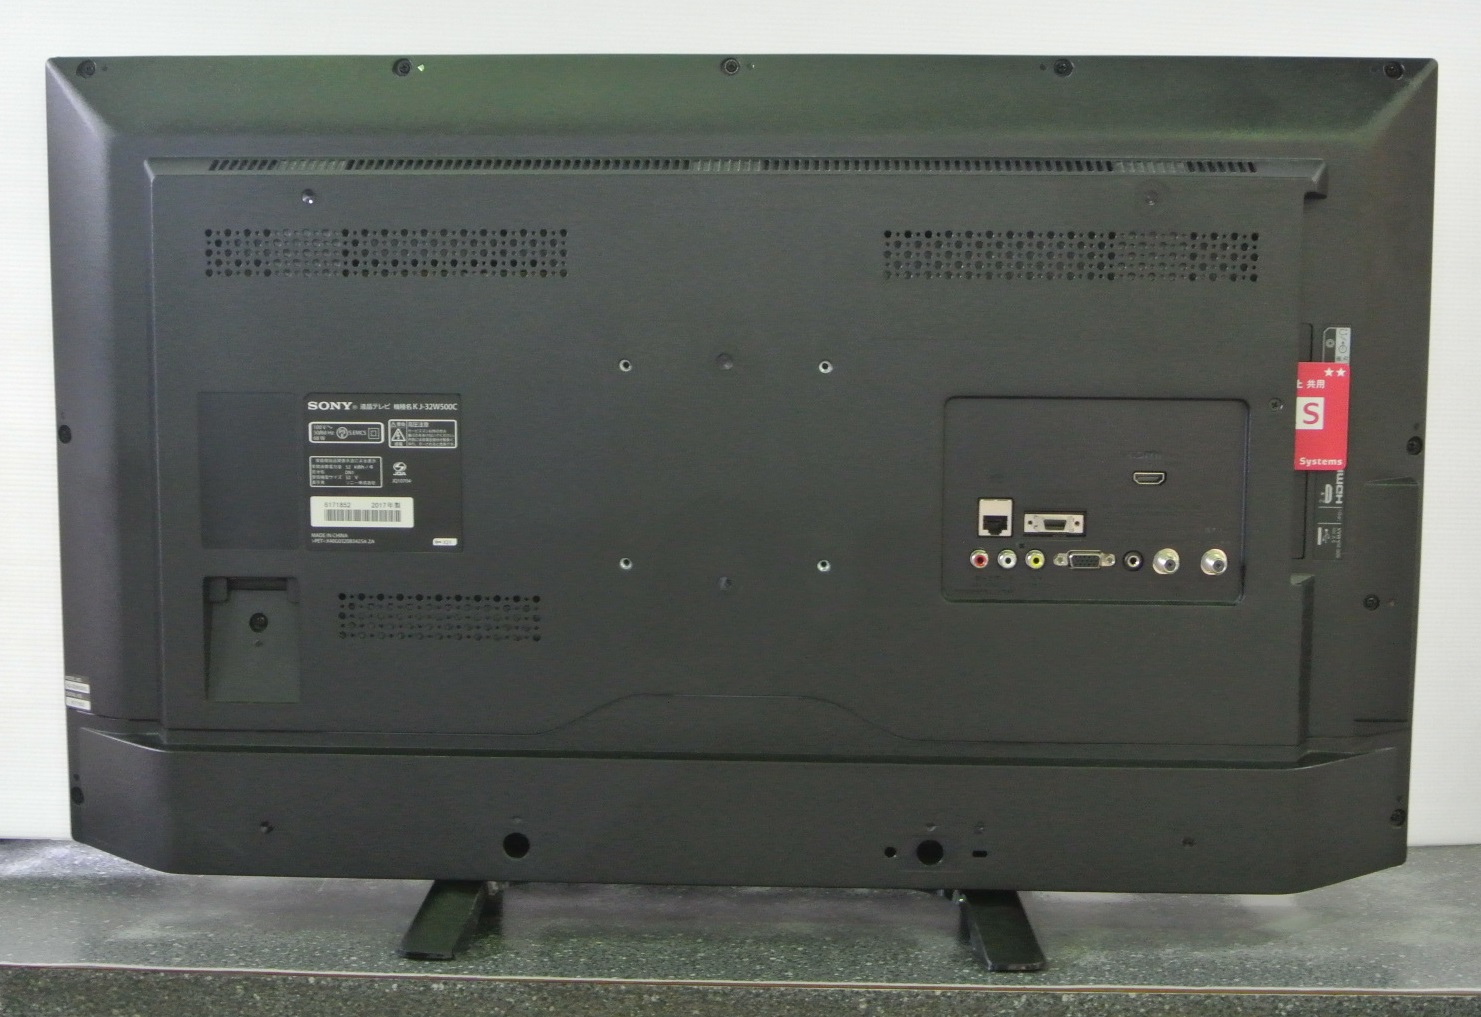 ソニー [KJ-49X8300D] 地上・BS・110度CSデジタルハイビジョン液晶